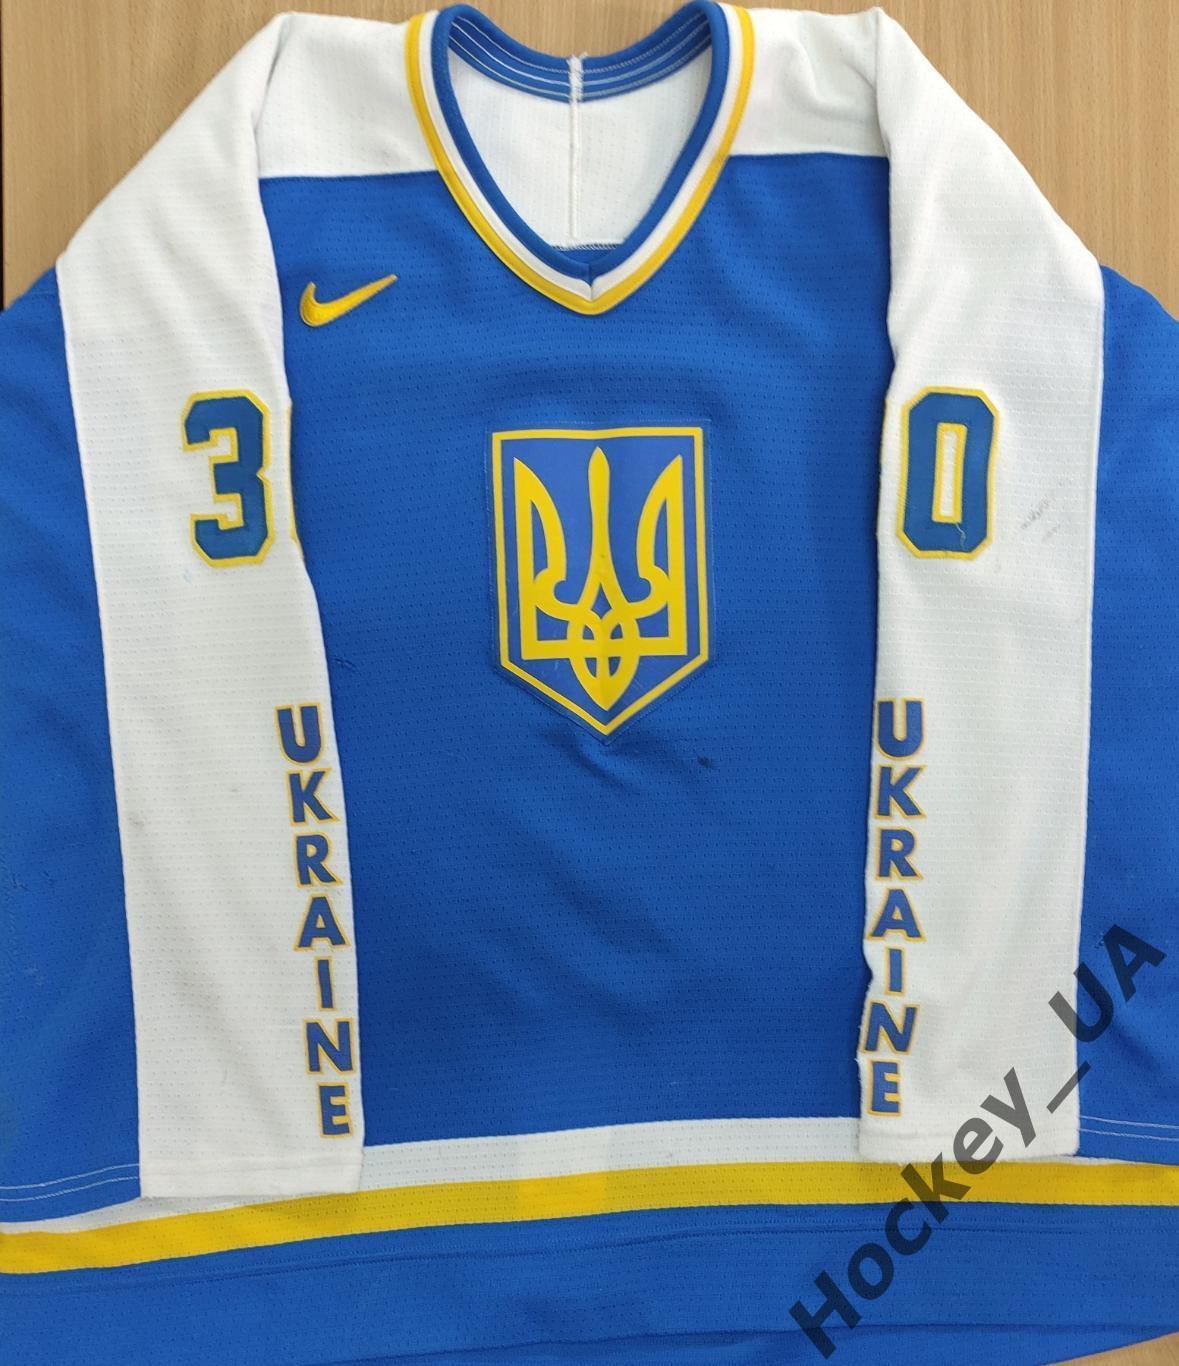 Хоккейный свитер (хоккейка, хоккейная майка, джерси) сборной Украины